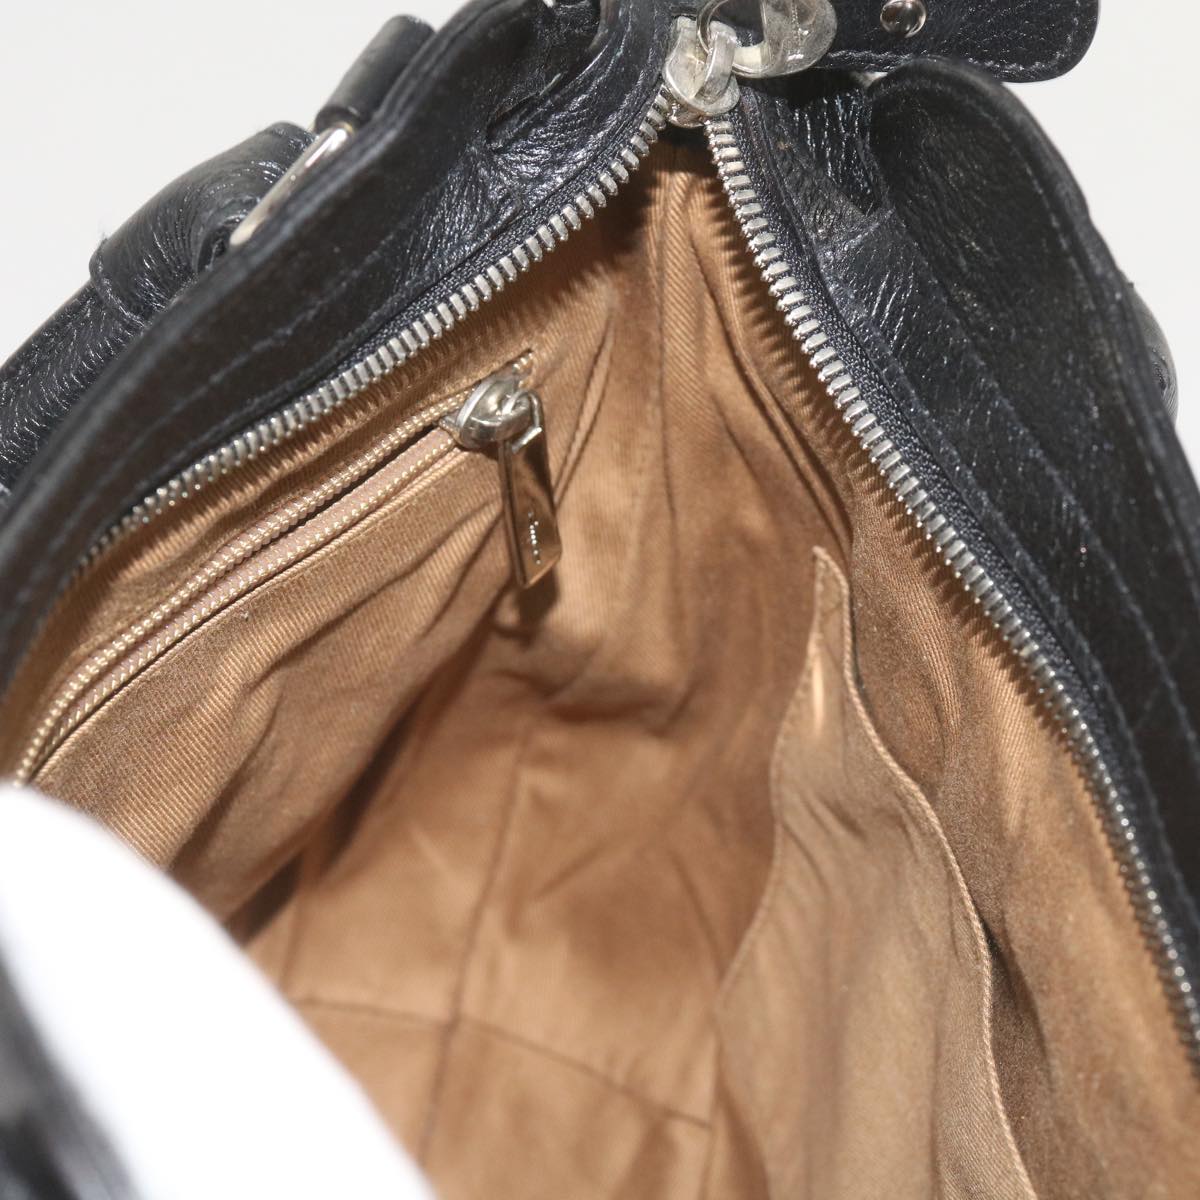 Salvatore Ferragamo Gancini Hand Bag Leather Black Auth 68138